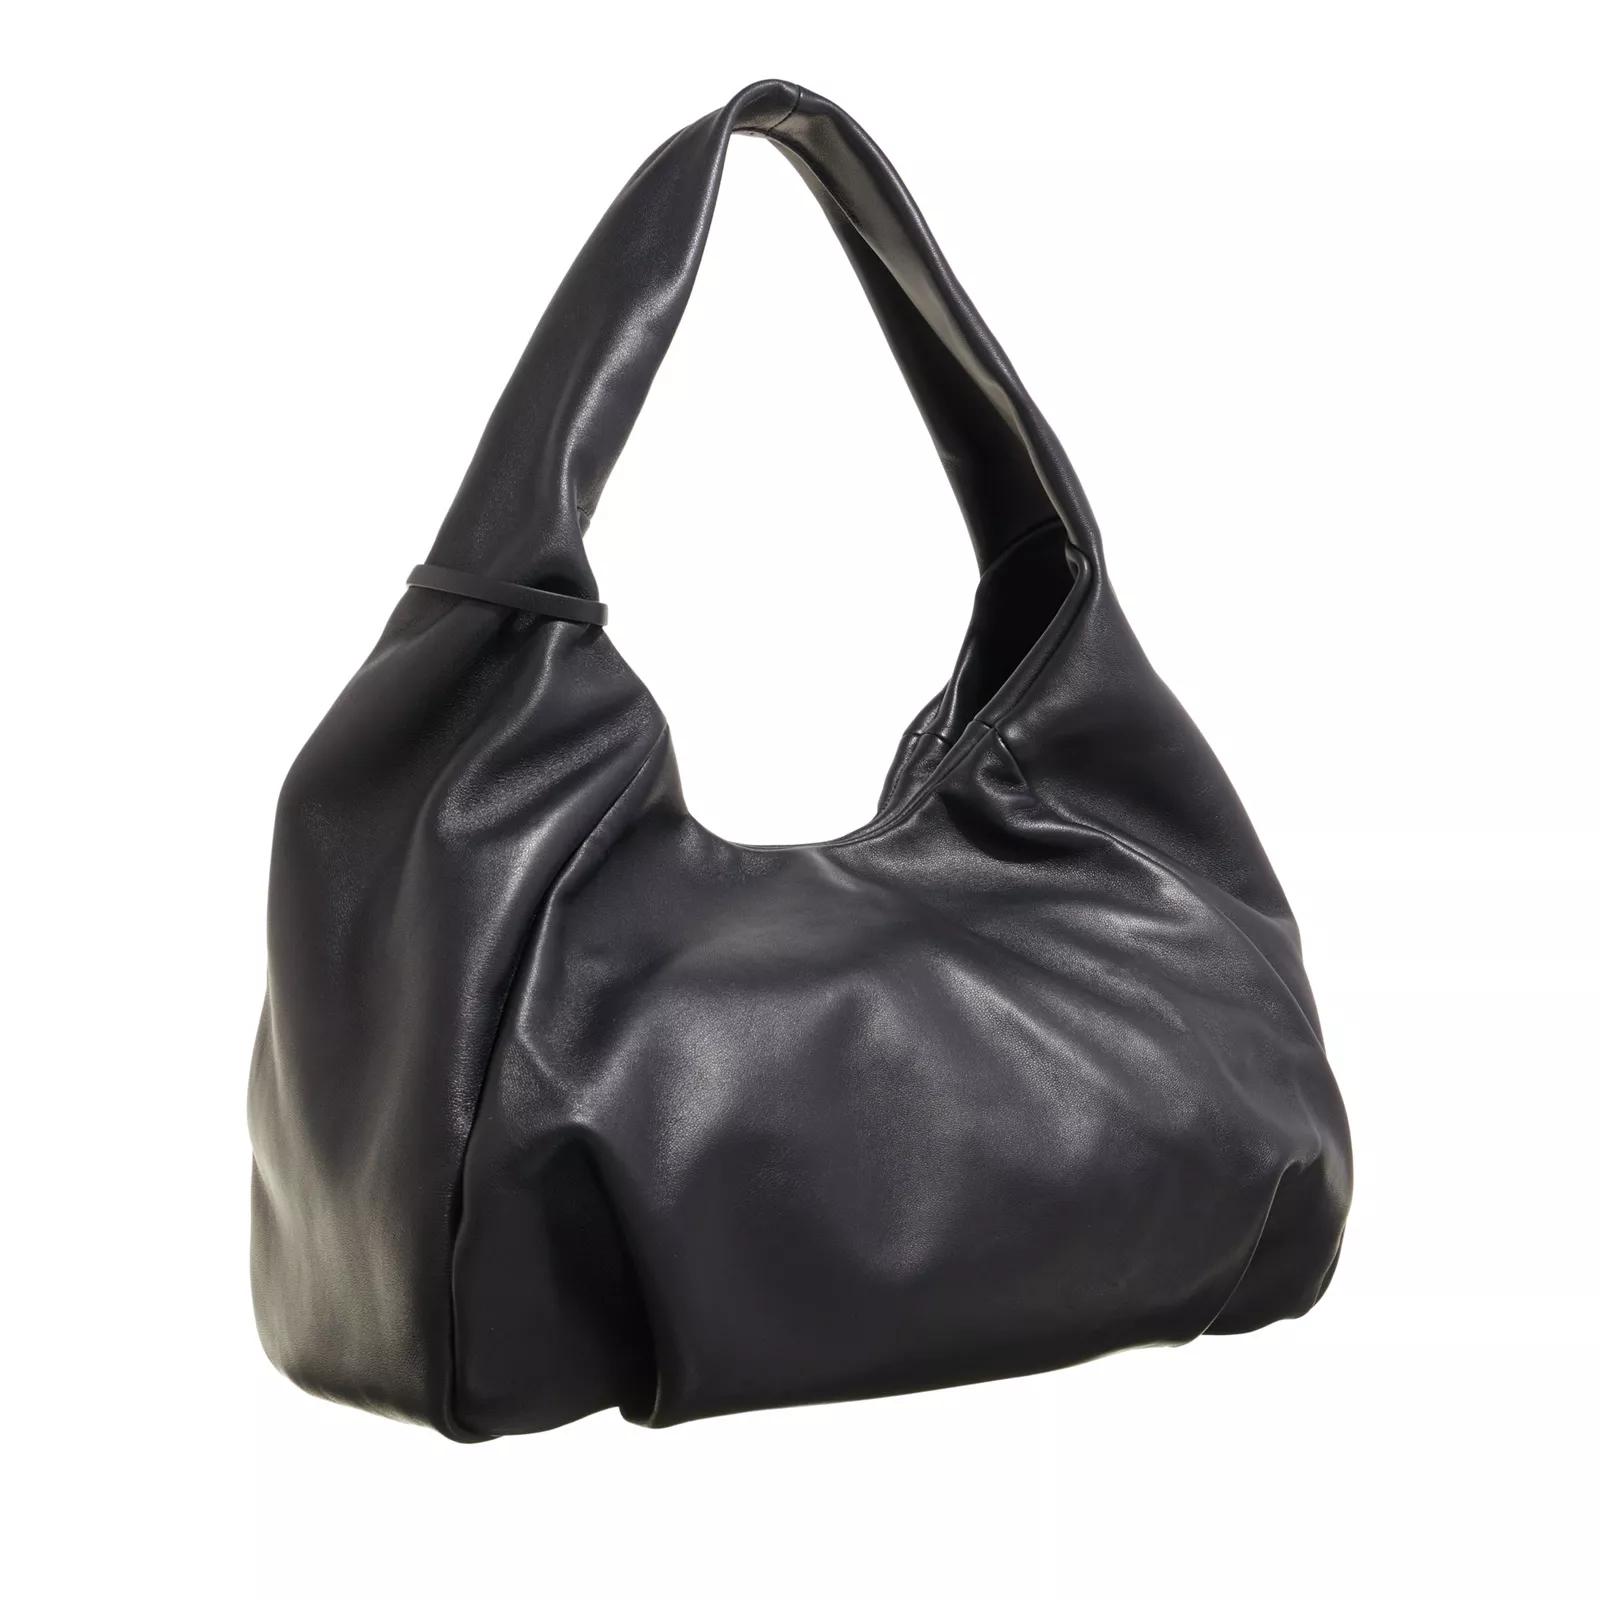 Stuart Weitzman Hobo bags The Moda Hobo Bag in zwart